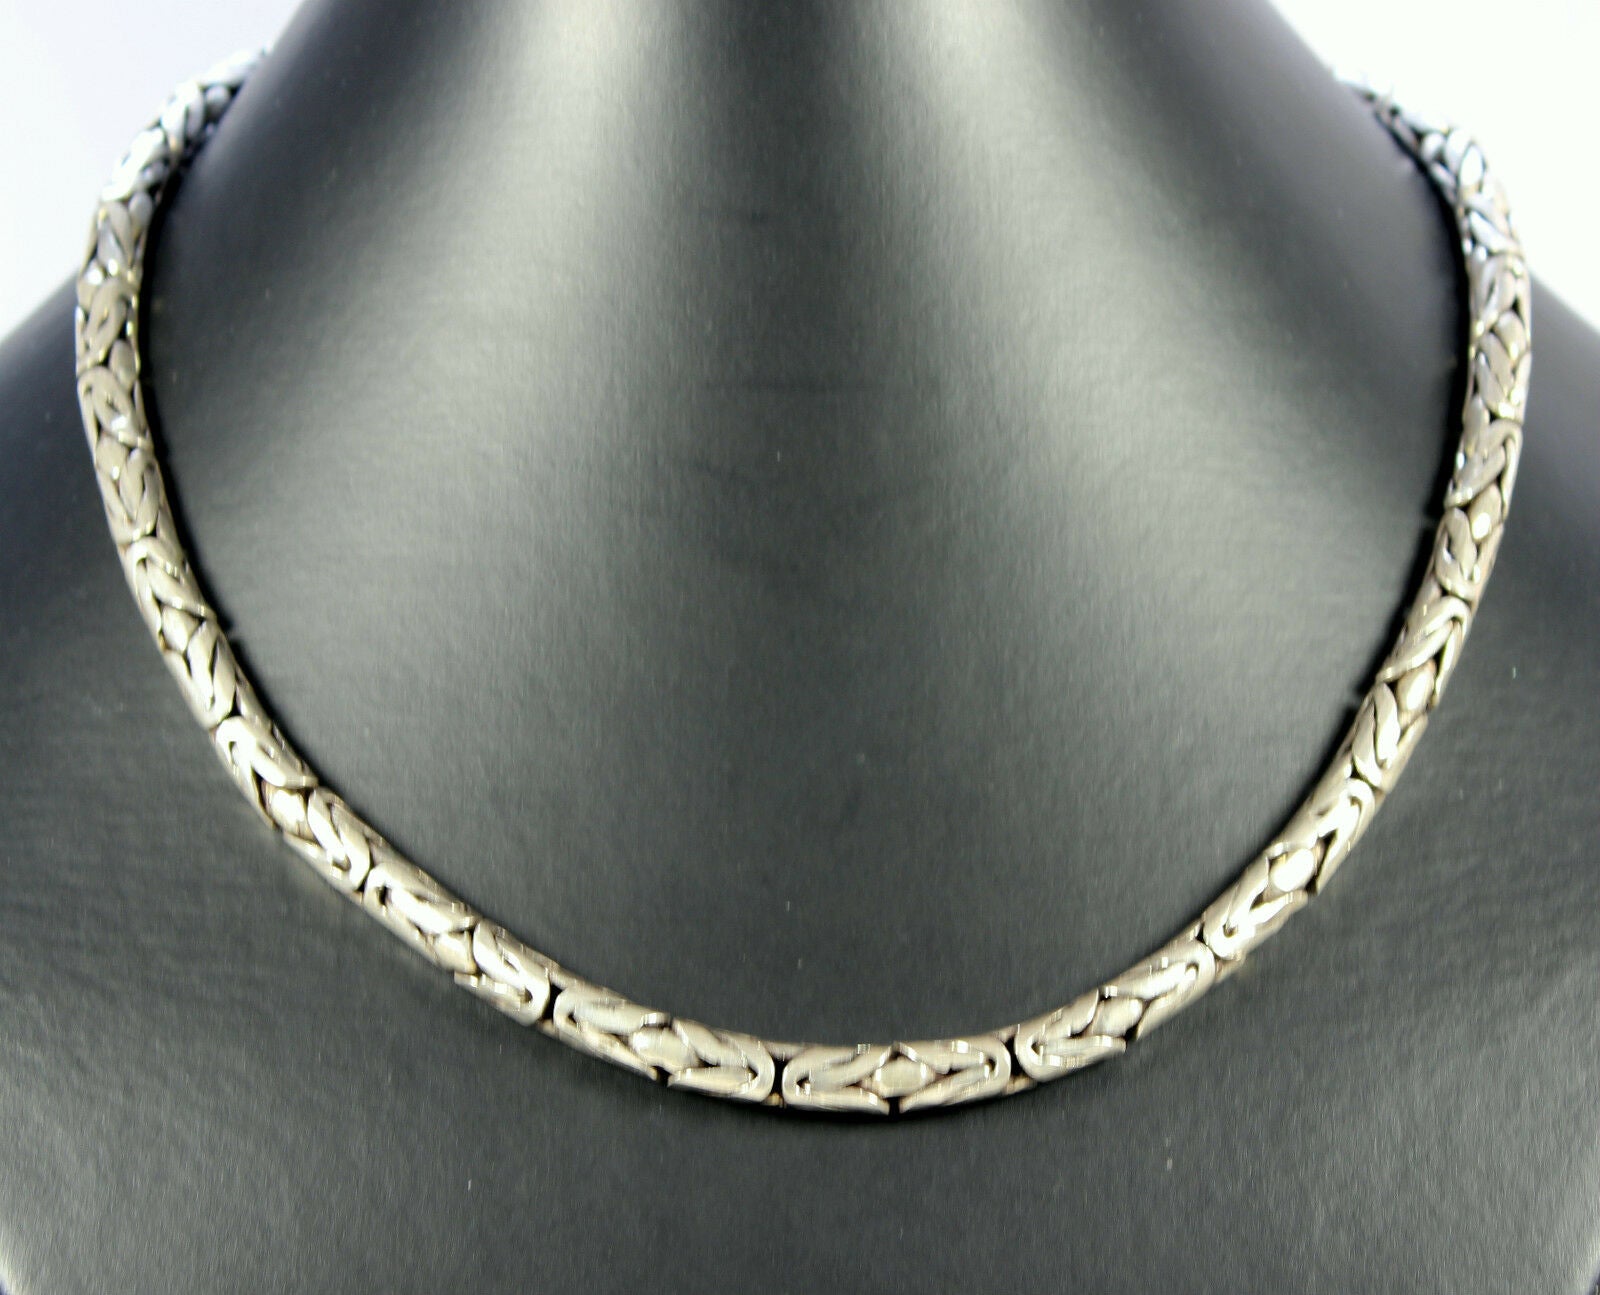 Königskette Echt 925 Silber 5,5mm Silberkette Königs-Kette Schmuck ca.46cm Lang